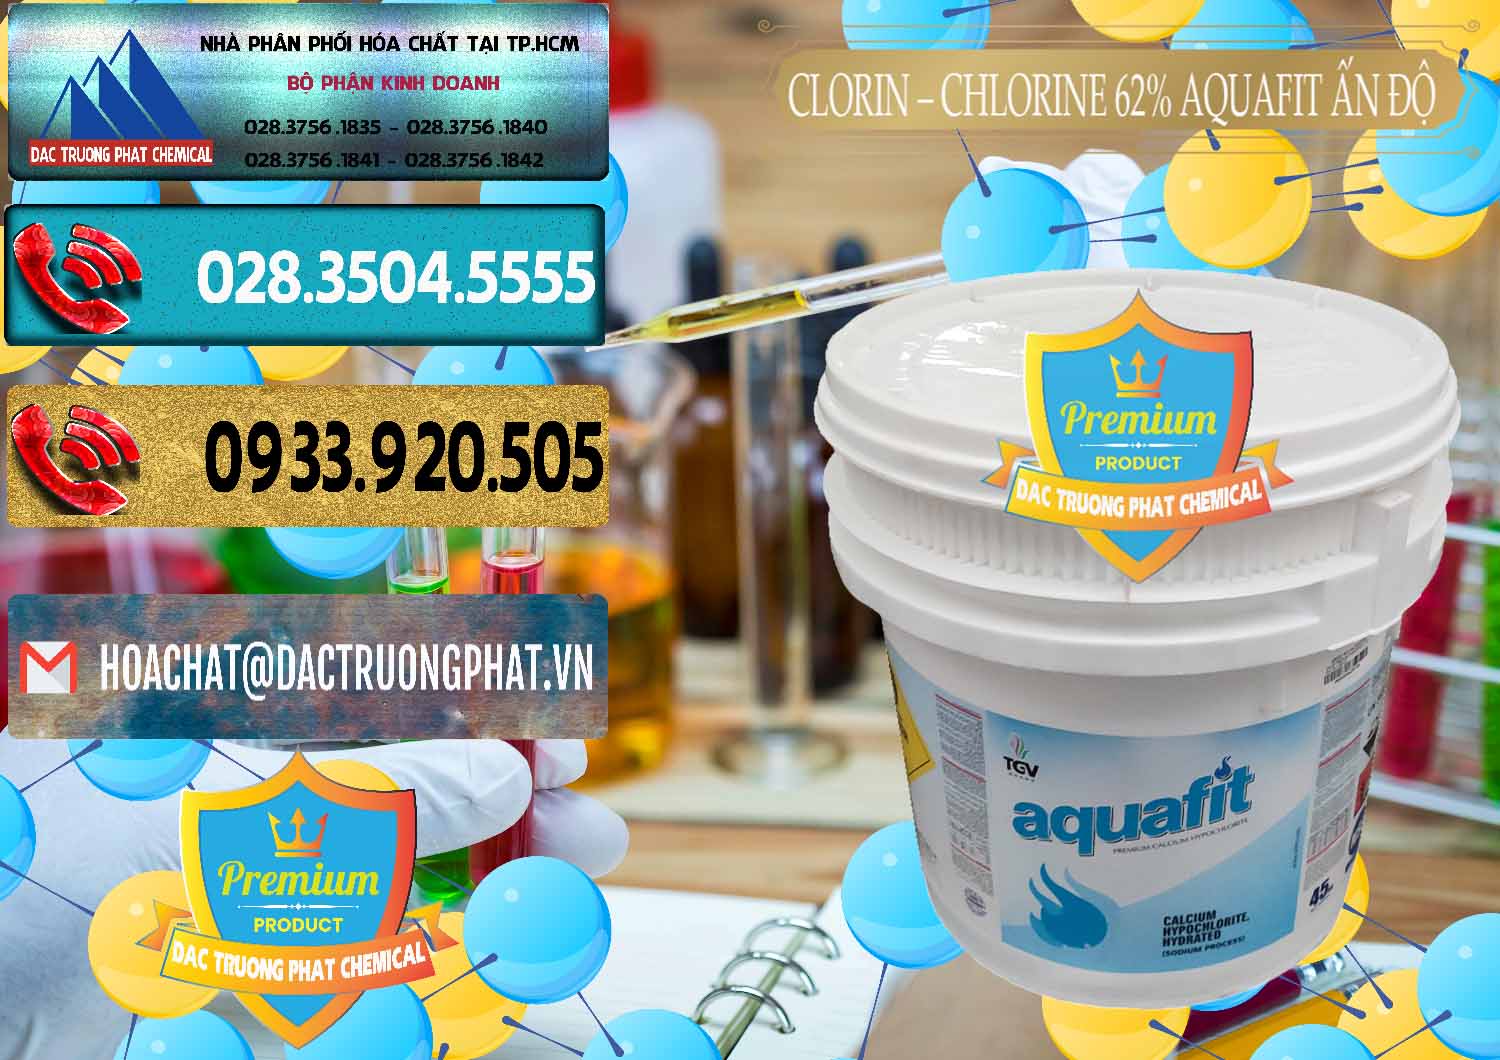 Đơn vị bán _ cung cấp Clorin - Chlorine 62% Aquafit Thùng Lùn Ấn Độ India - 0057 - Nơi chuyên nhập khẩu _ phân phối hóa chất tại TP.HCM - hoachatdetnhuom.com